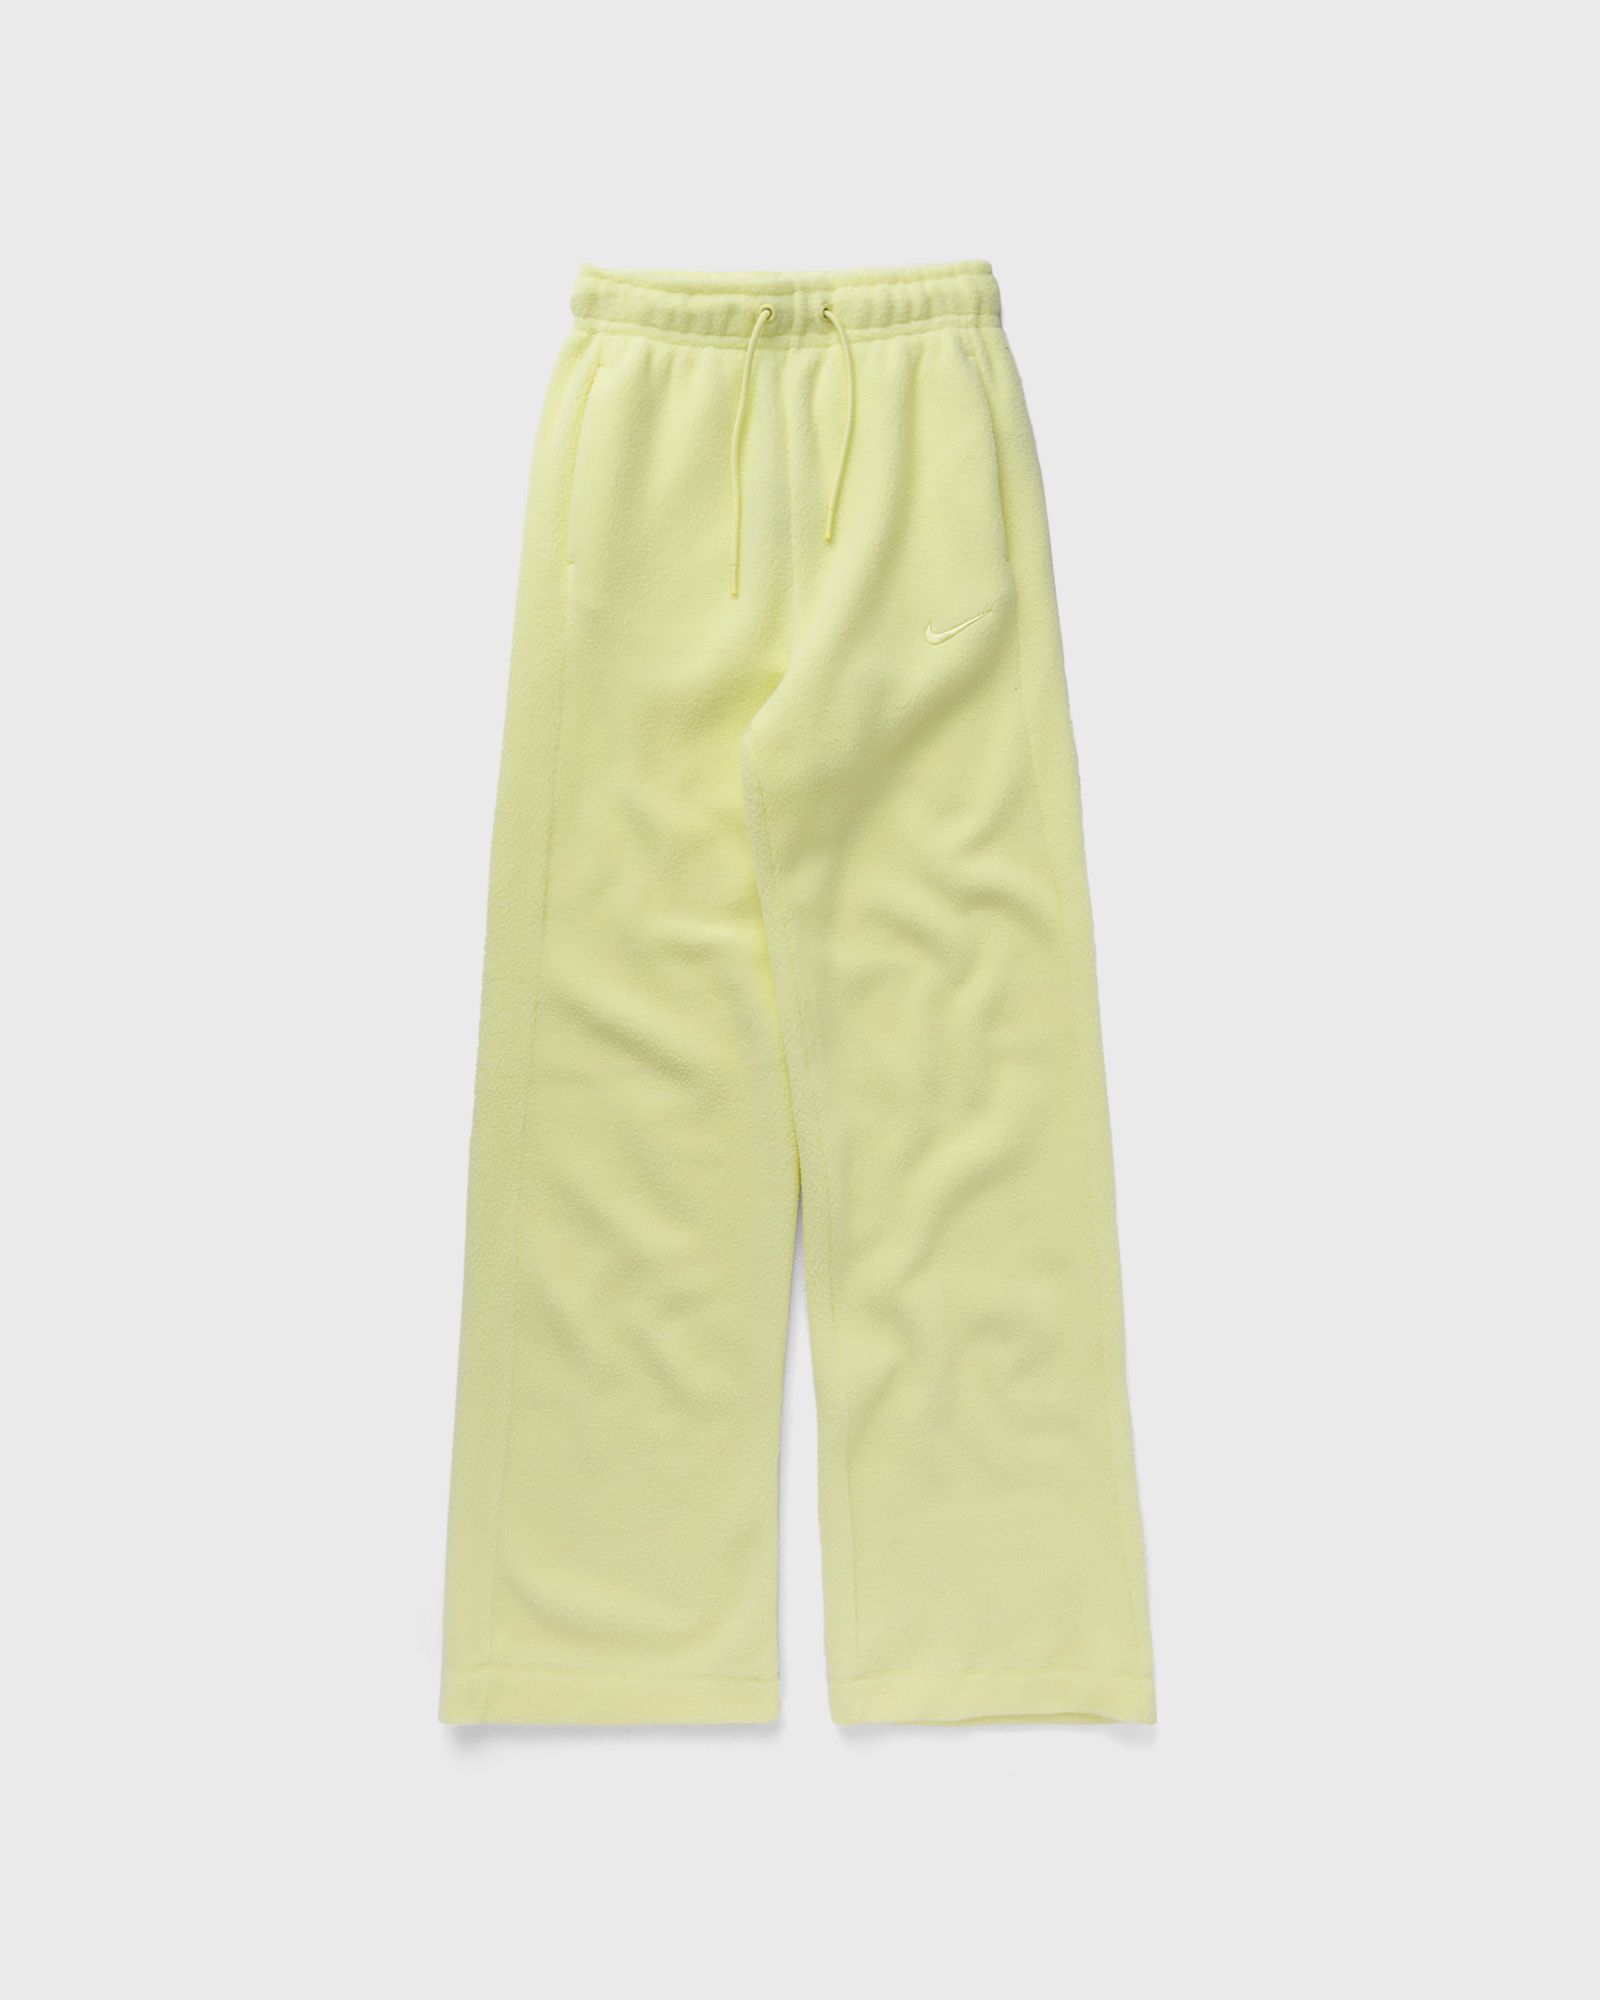 Nike - sportswear plush women's pants women casual pants yellow in größe:xs